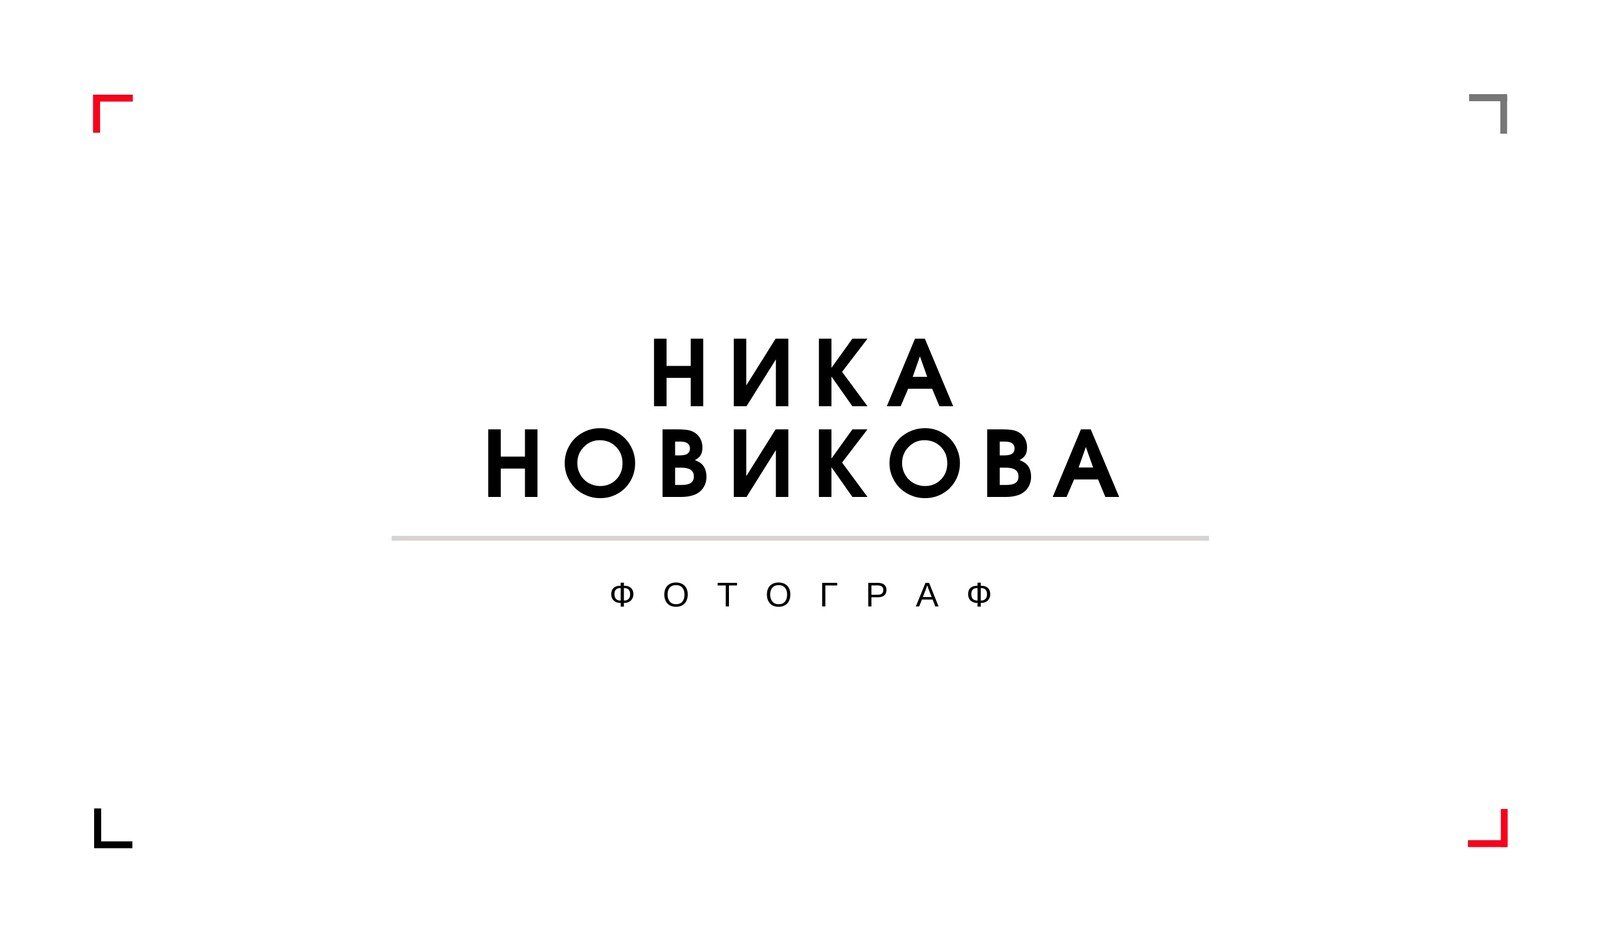 Визитки онлайн: заказать изготовление и печать визиток недорого в Крыму